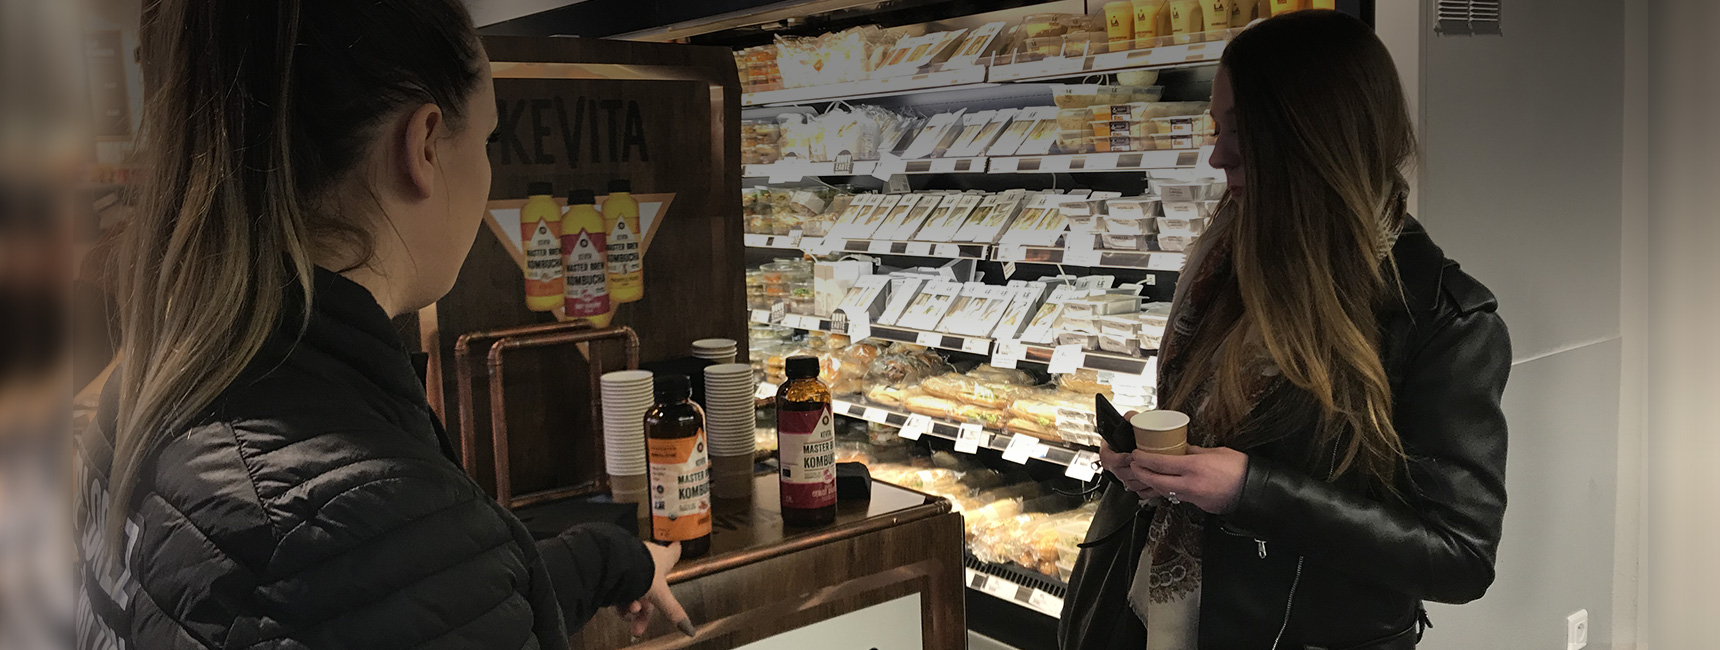 Kevita lance son circuit proxi pour faire découvrir ses produits - Keemia Shopper Marketing - Agence d'activation shopper marketing phygitale